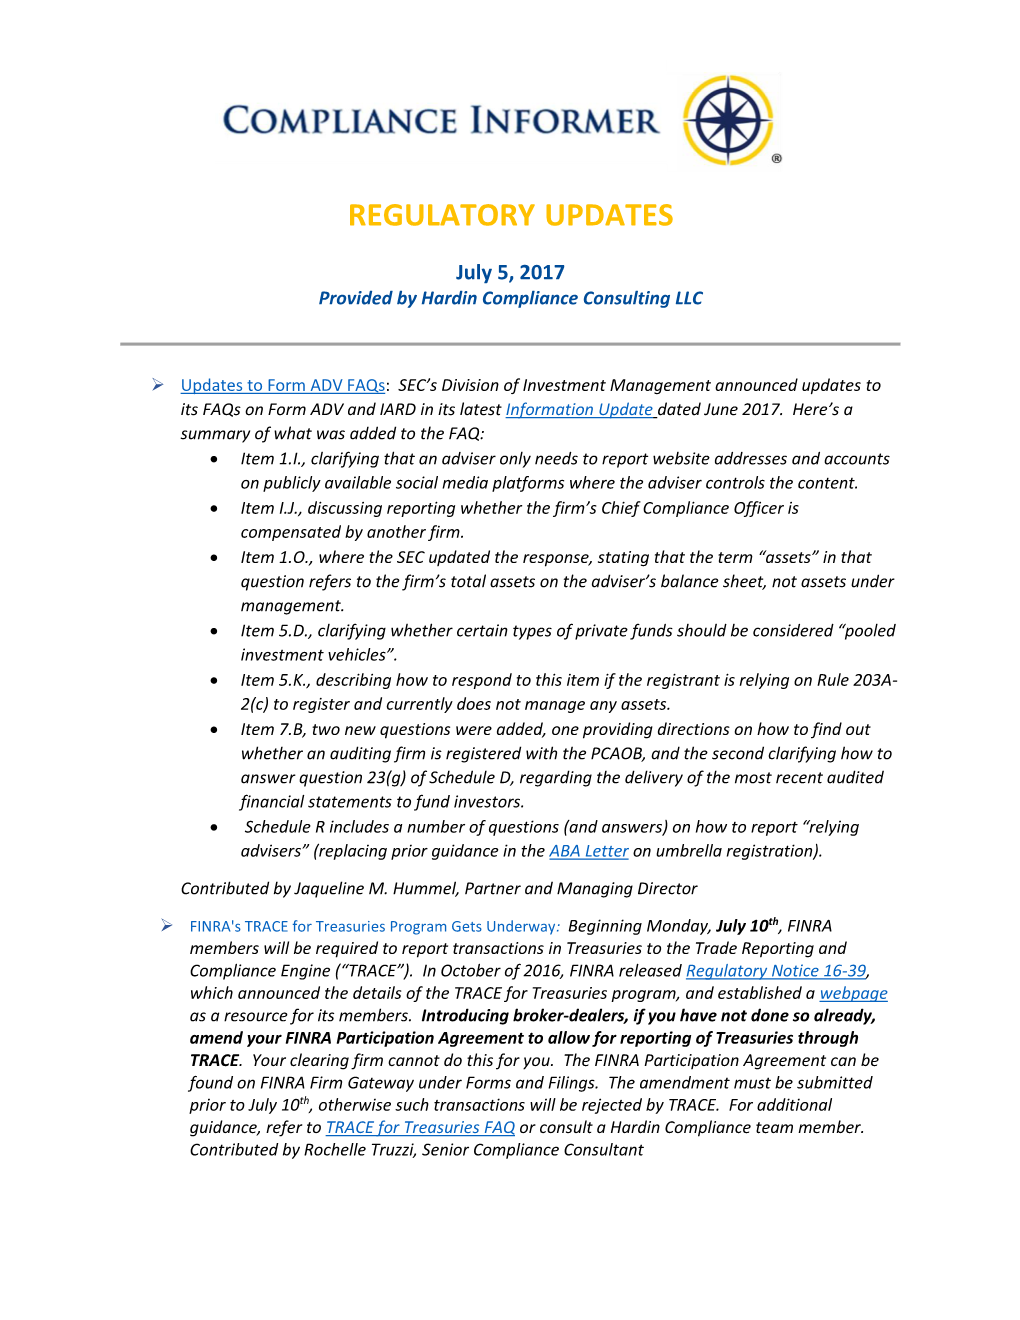 Regulatory Updates